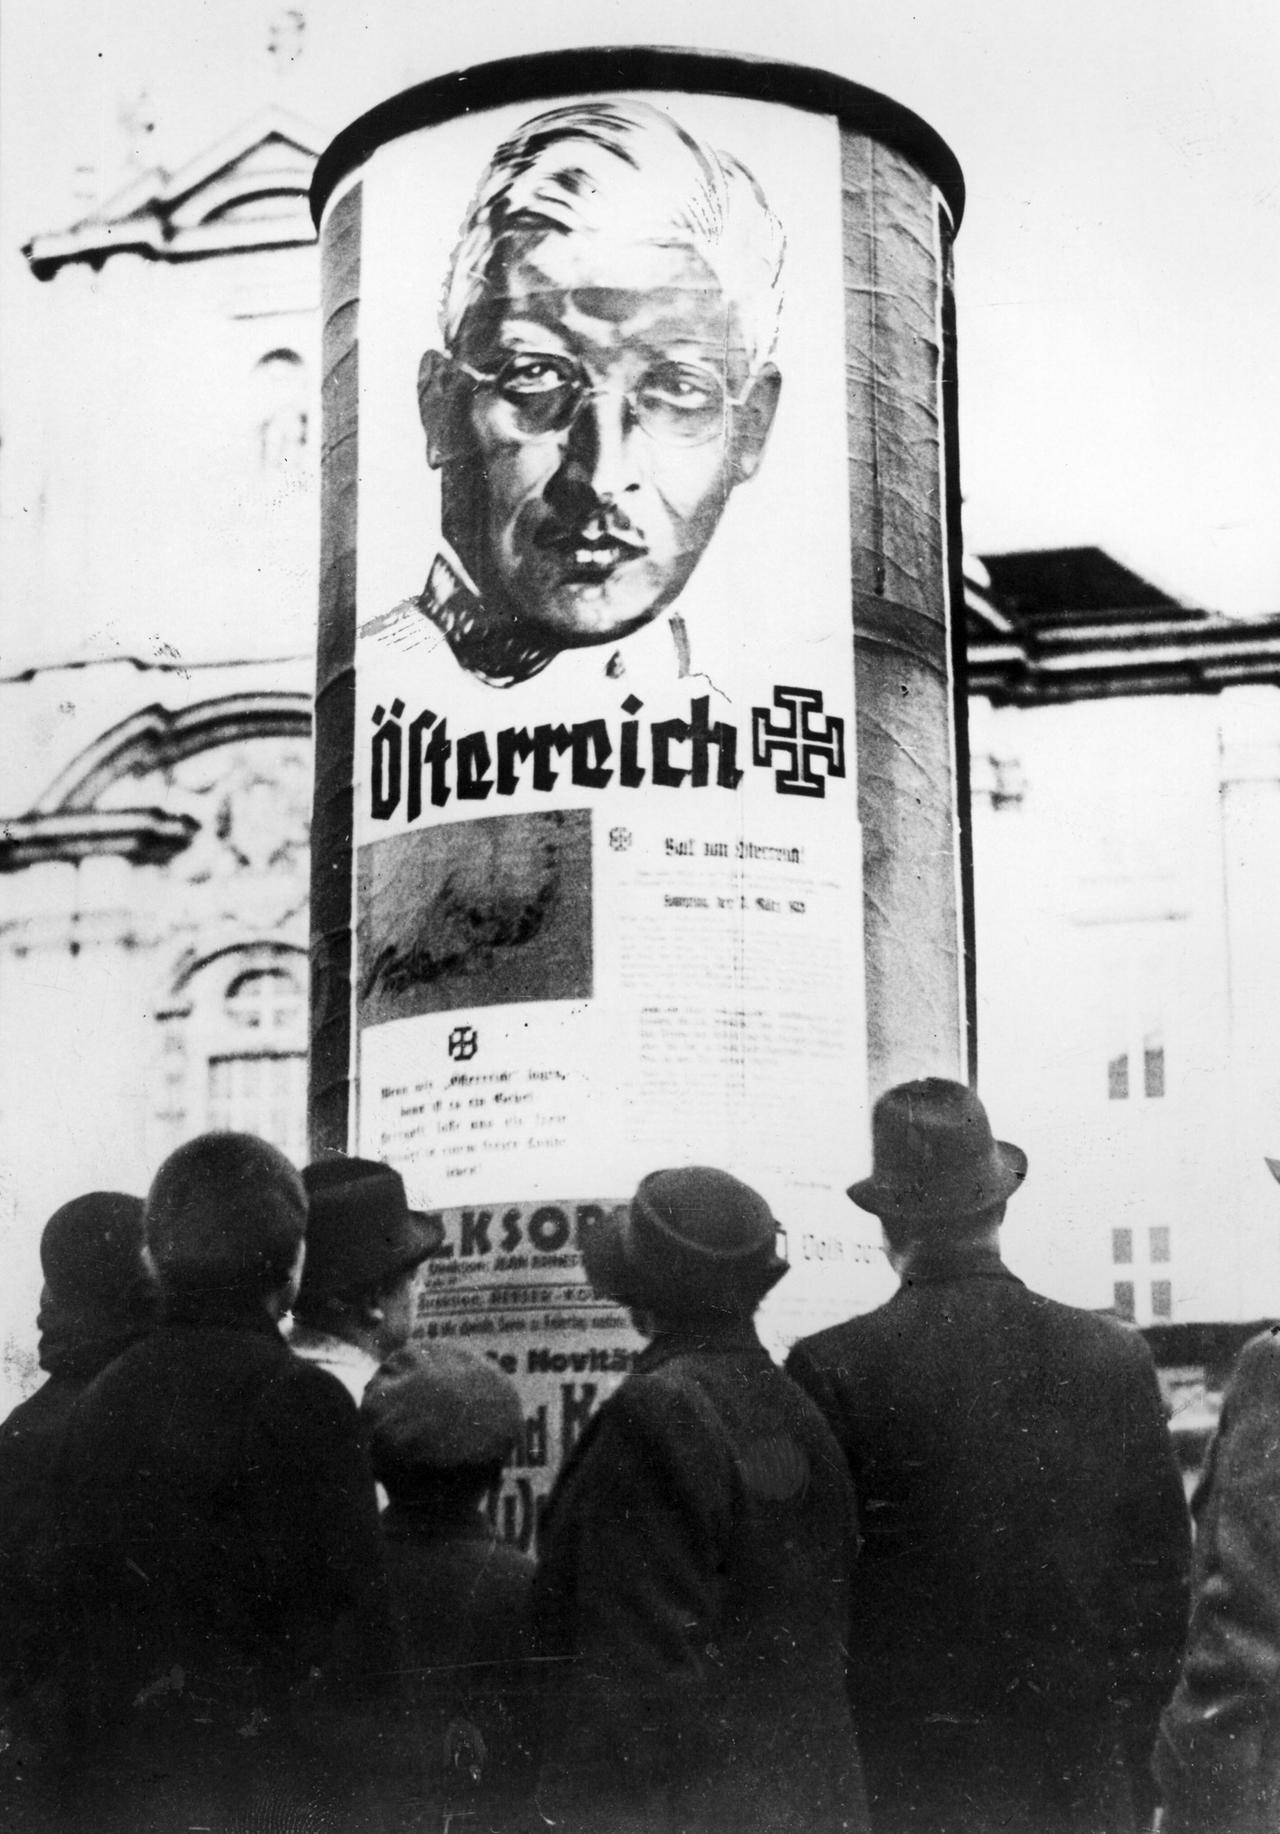 Plakat mi dem Aufruf des Bundeskanzlers Kurt Schuschnigg zur Selbständigkeit Österreichs am 9. Maerz 1938 an einer Litfasssäule.